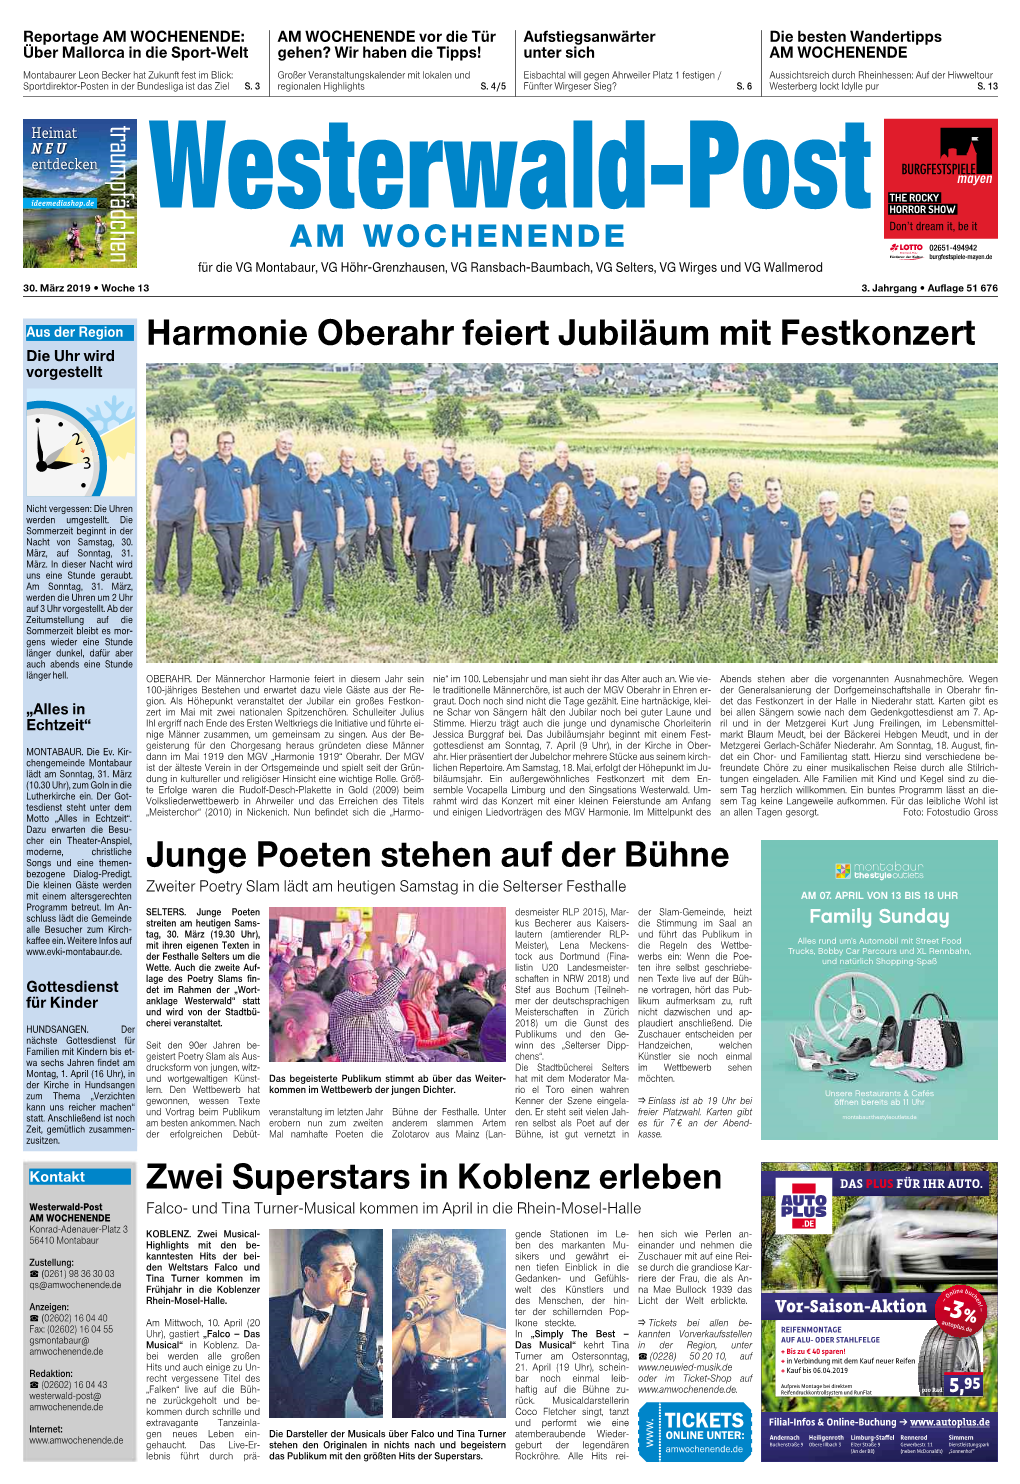 Harmonie Oberahr Feiert Jubiläum Mit Festkonzert Junge Poeten Stehen